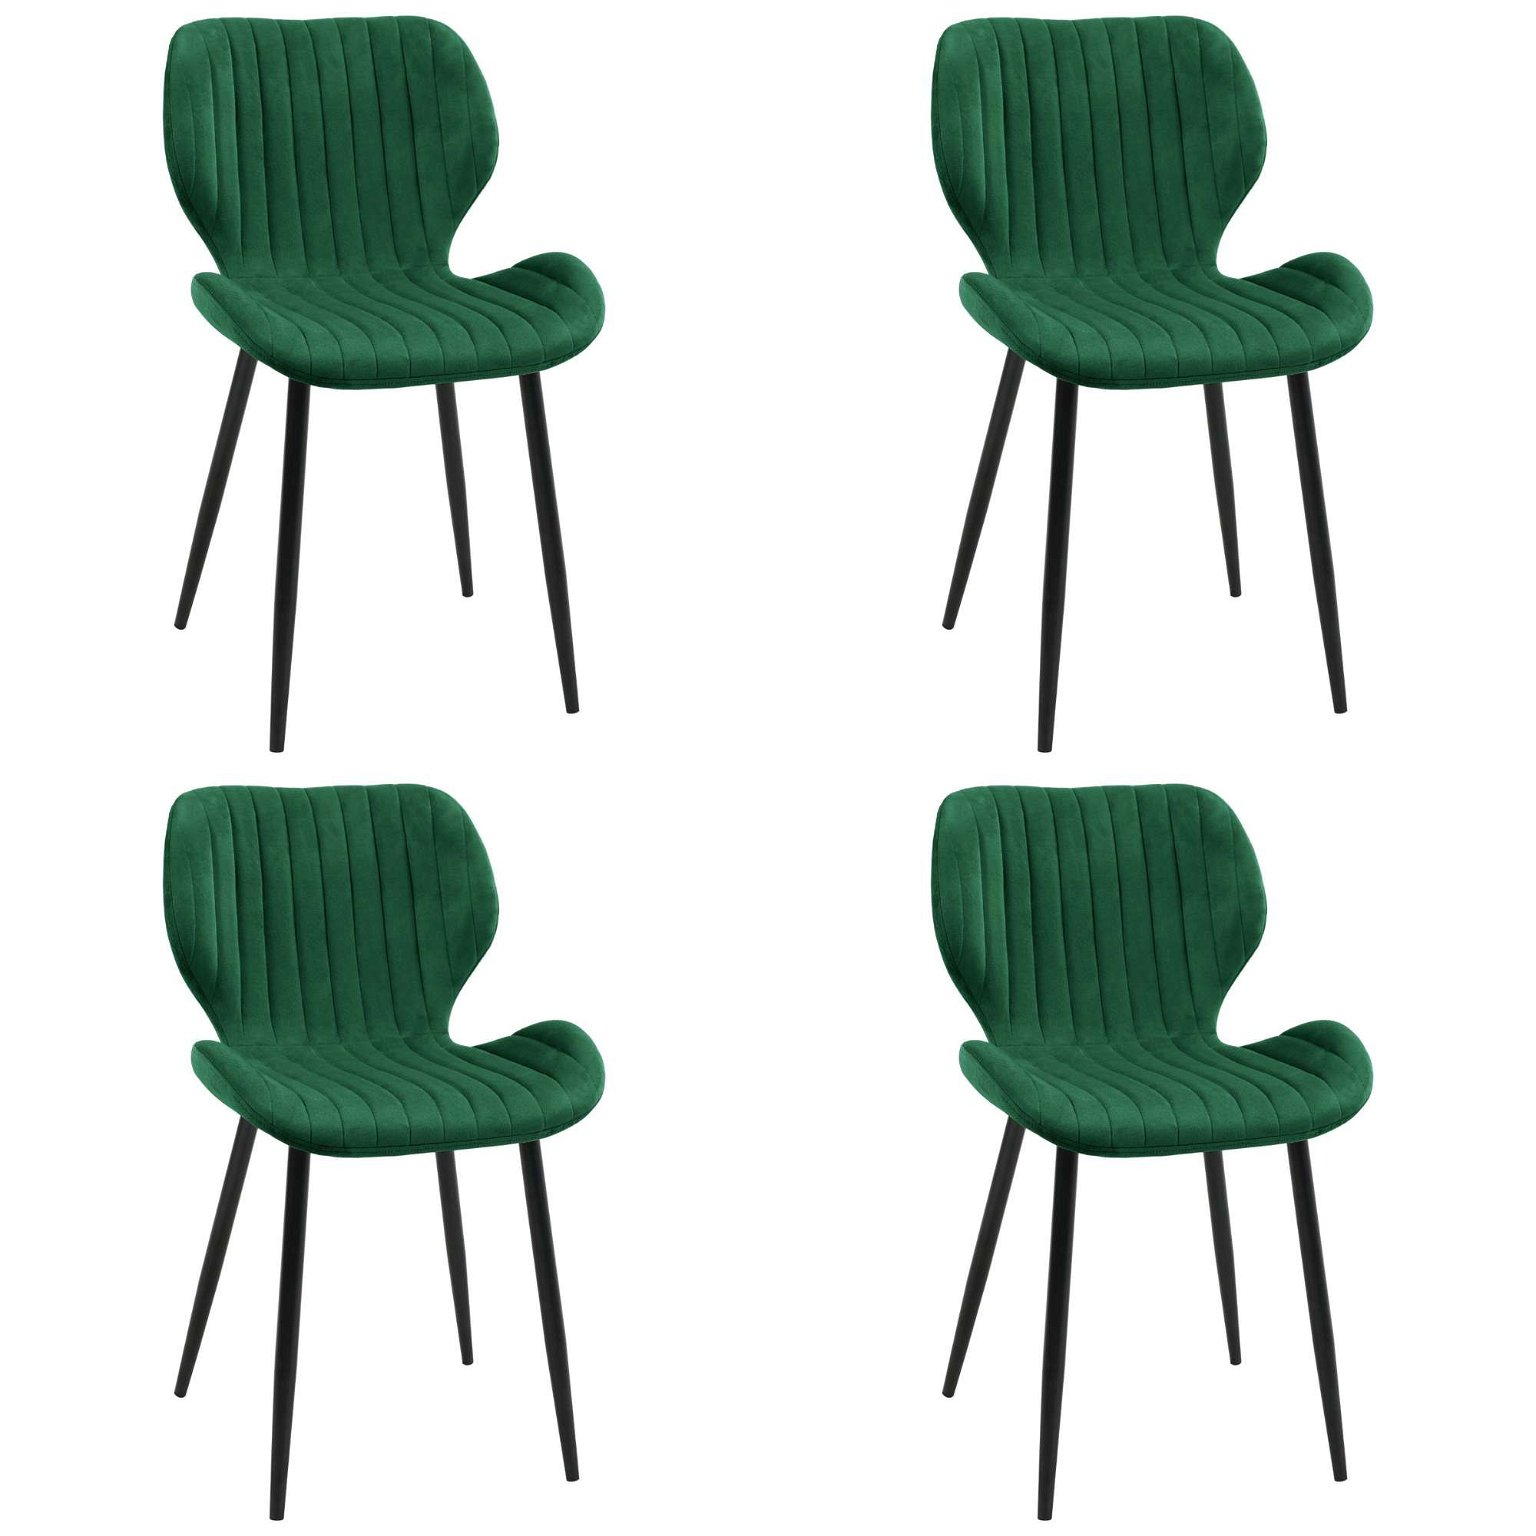 4-ių kėdžių komplektas SJ.17, žalia